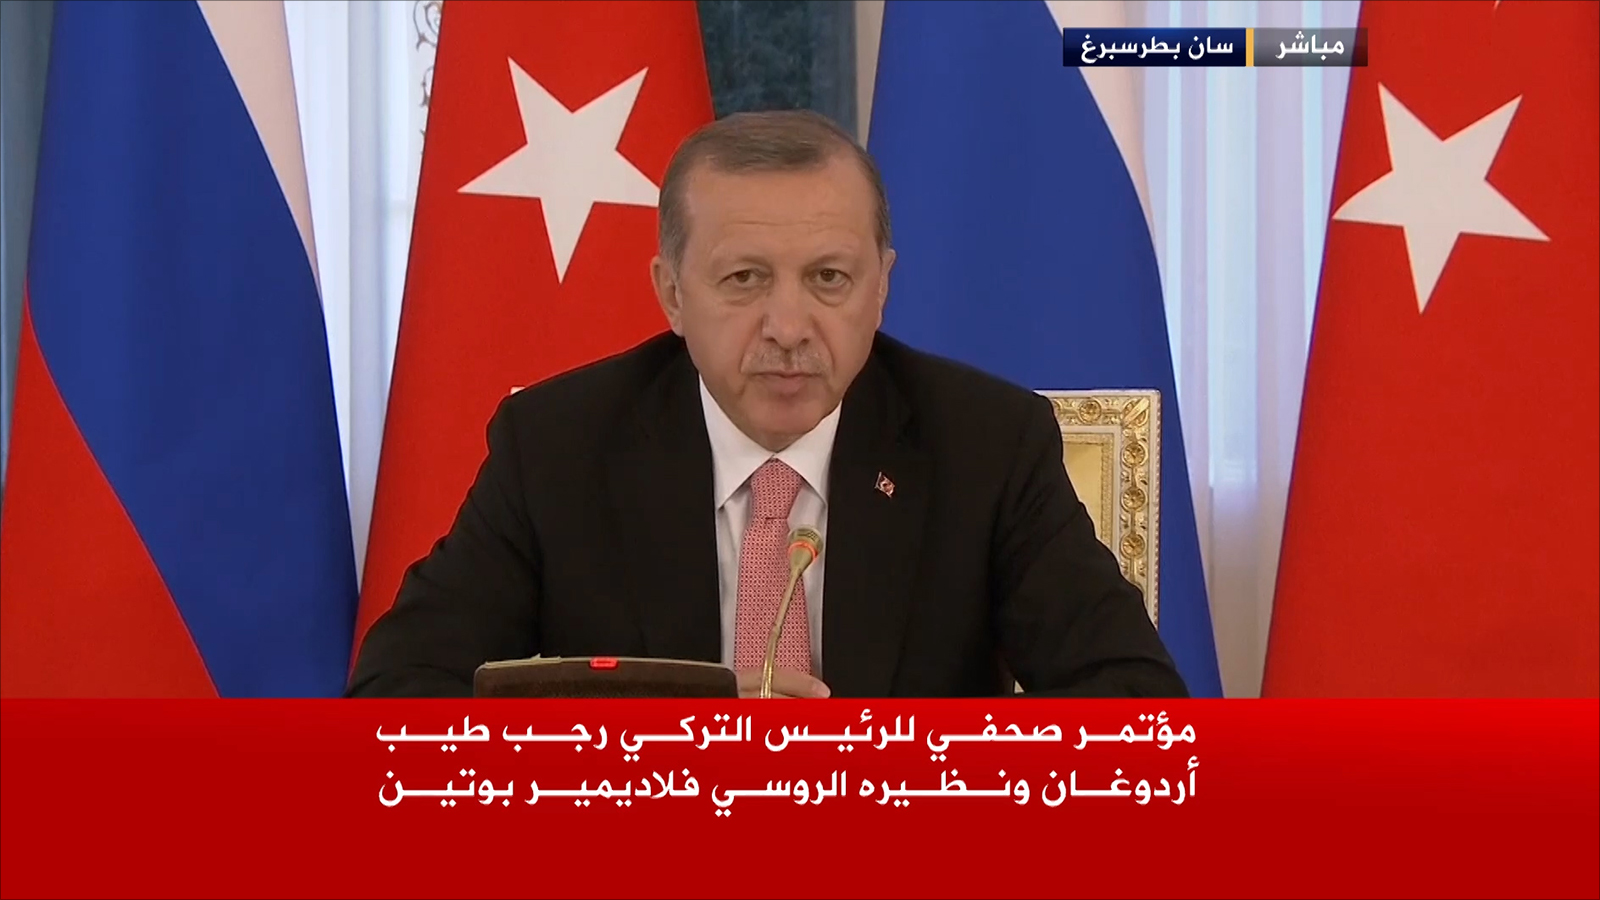 أردوغان:  لرفع مستوى العلاقات بين البلدين إلى أعلى مما كانت عليه قبل الأزمة الأخيرة (الجزيرة)